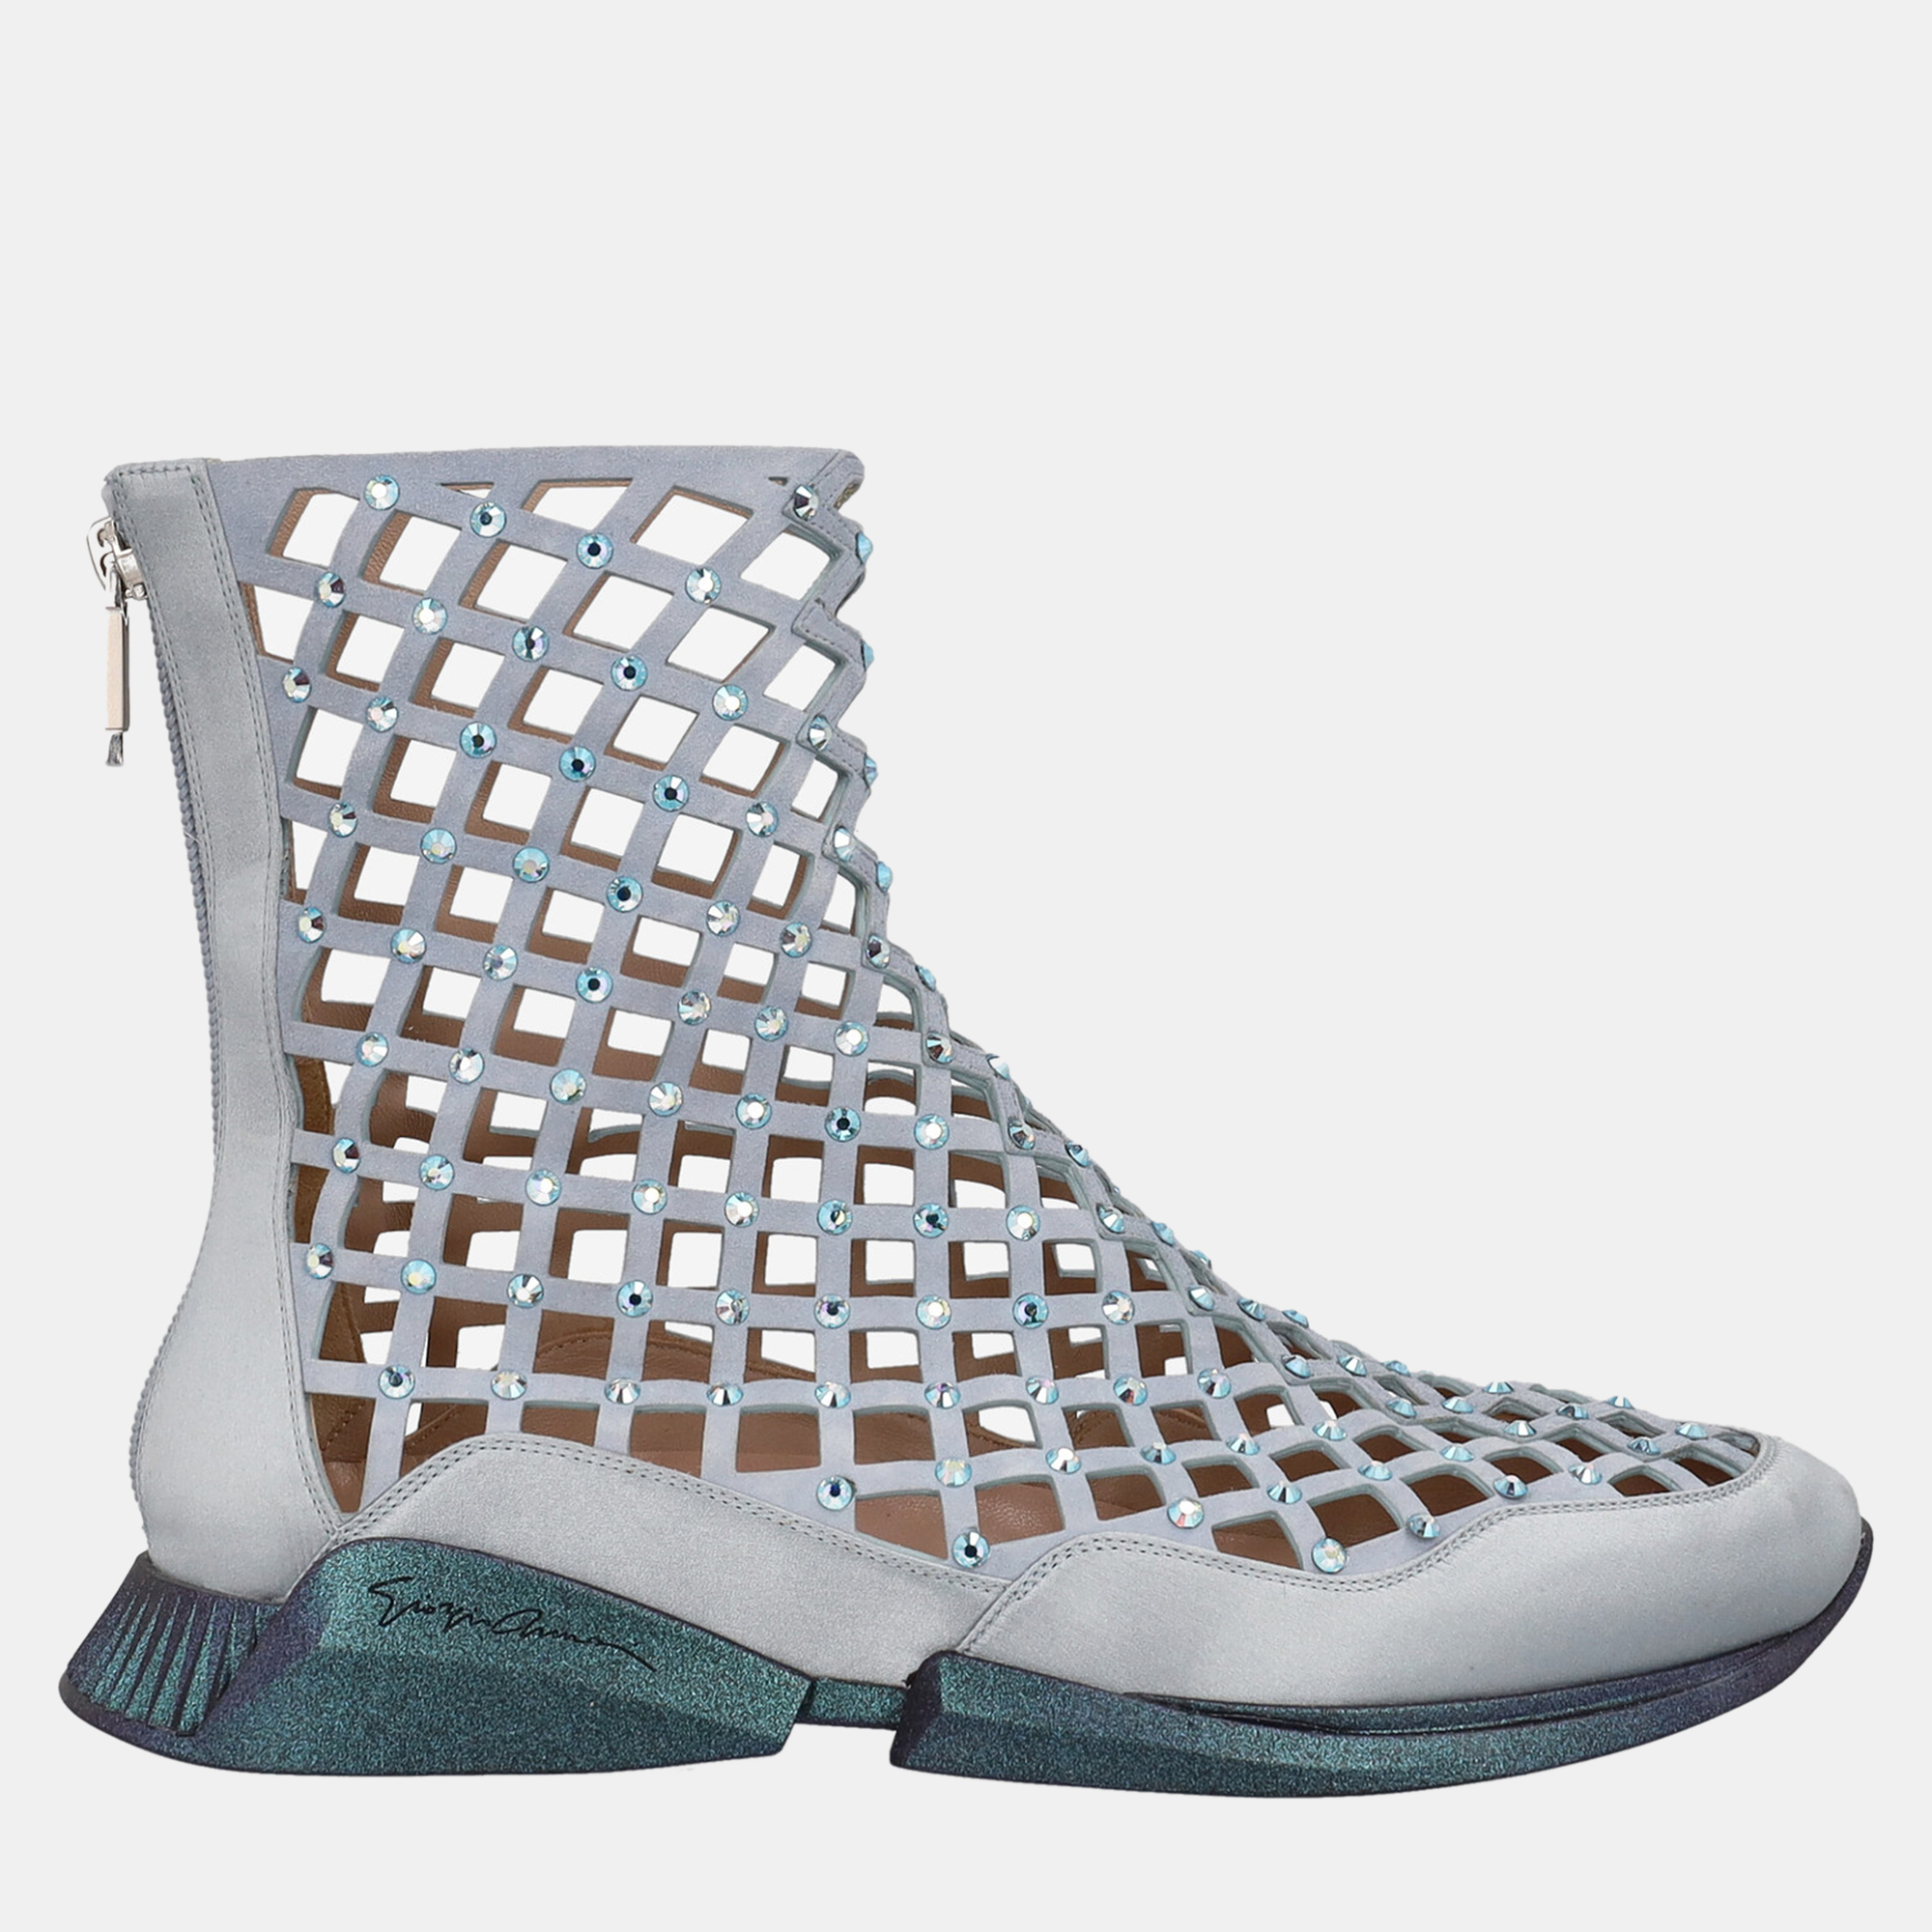 Giorgio Armani  Women's Leather Ankle Boots - Blue - EU 37